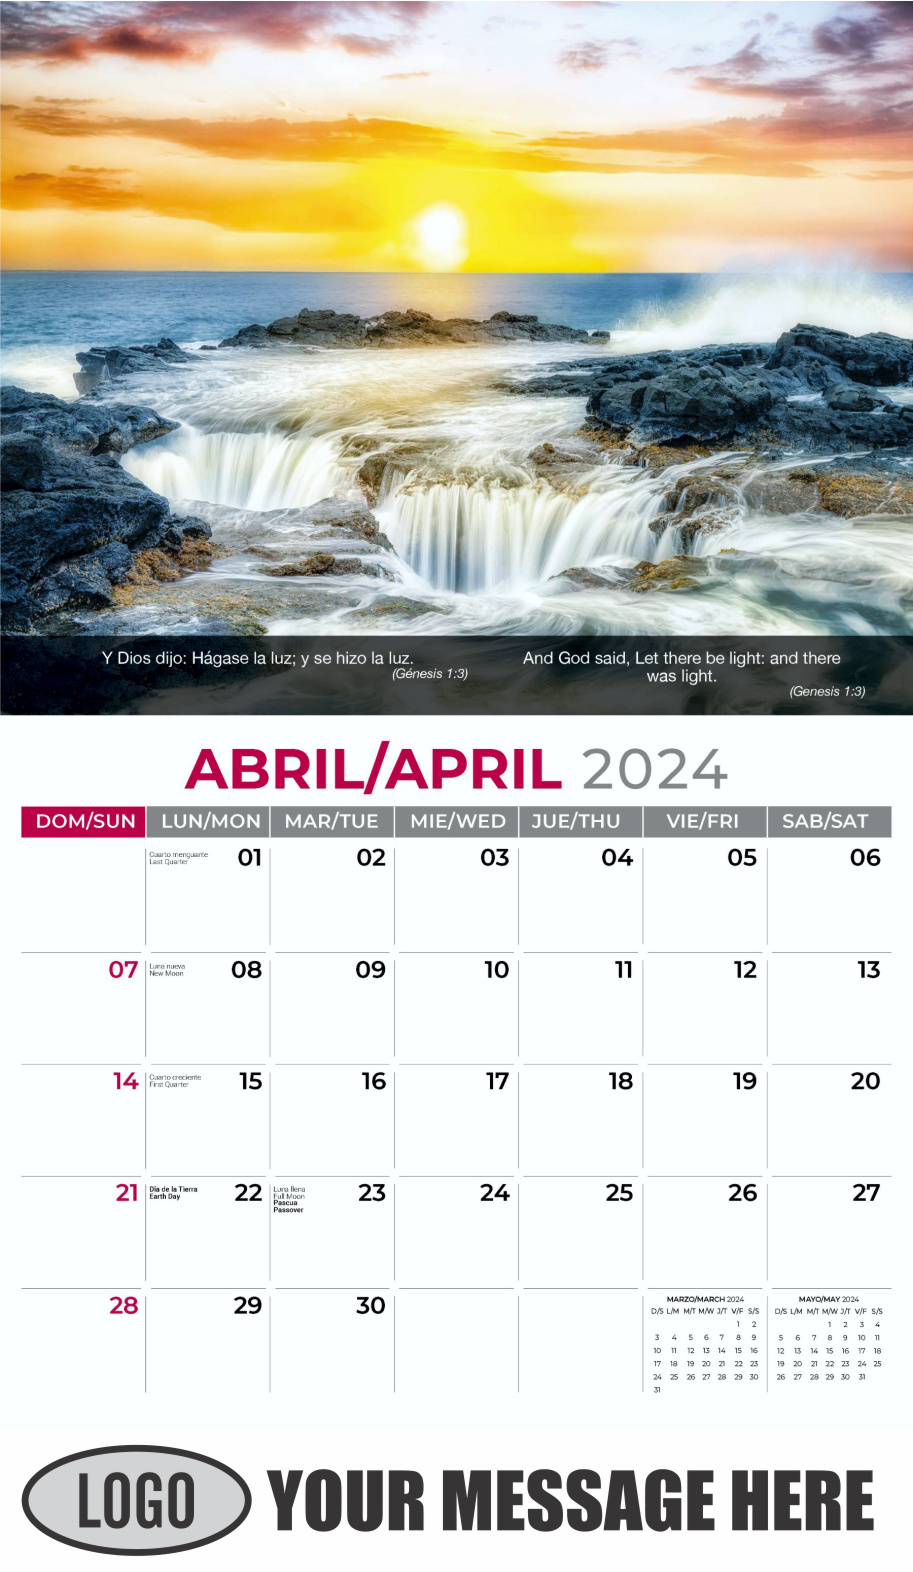 Faith Passages 2024 Bilingual Christian Faith Business Promotional Calendar - April